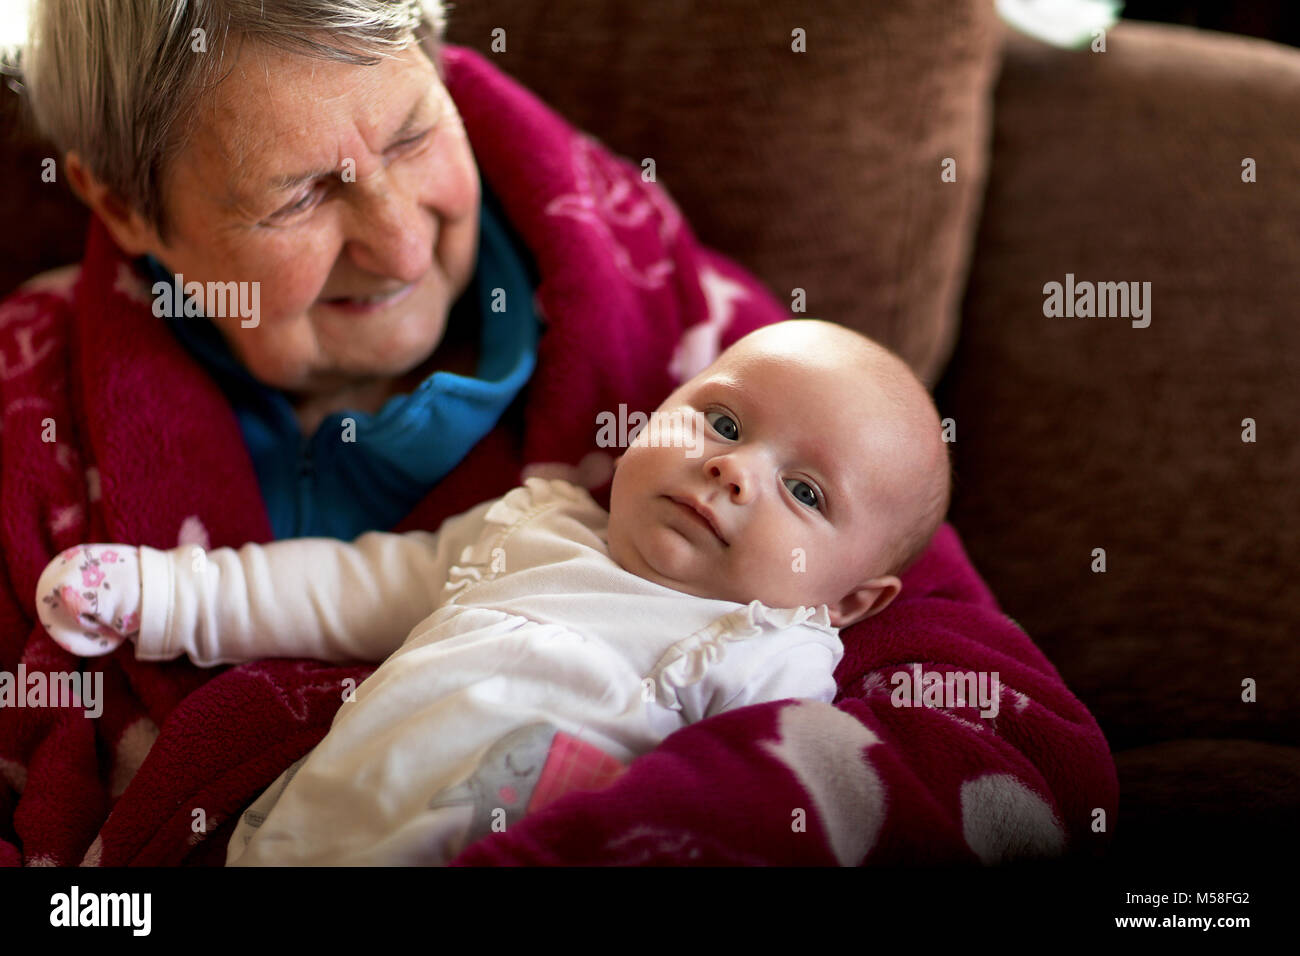 Fier grand-mère avec bébé Banque D'Images